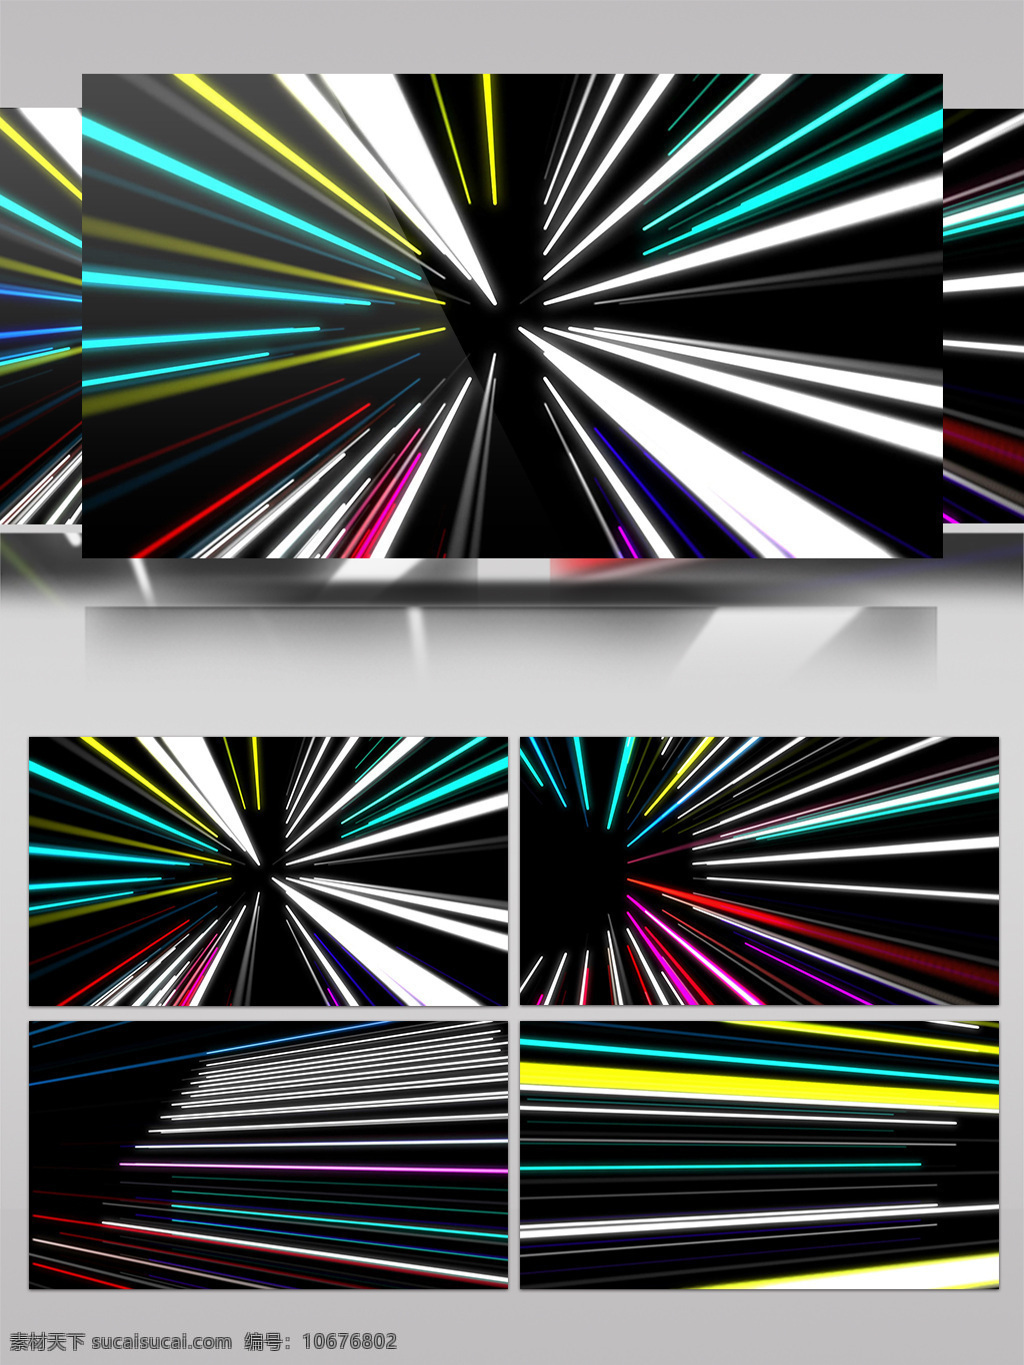 七彩 散射 光芒 视频 华丽旋转光 炫酷轮回光芒 生活抽象 画面意境 动态抽象 高清视频素材 特效视频素材